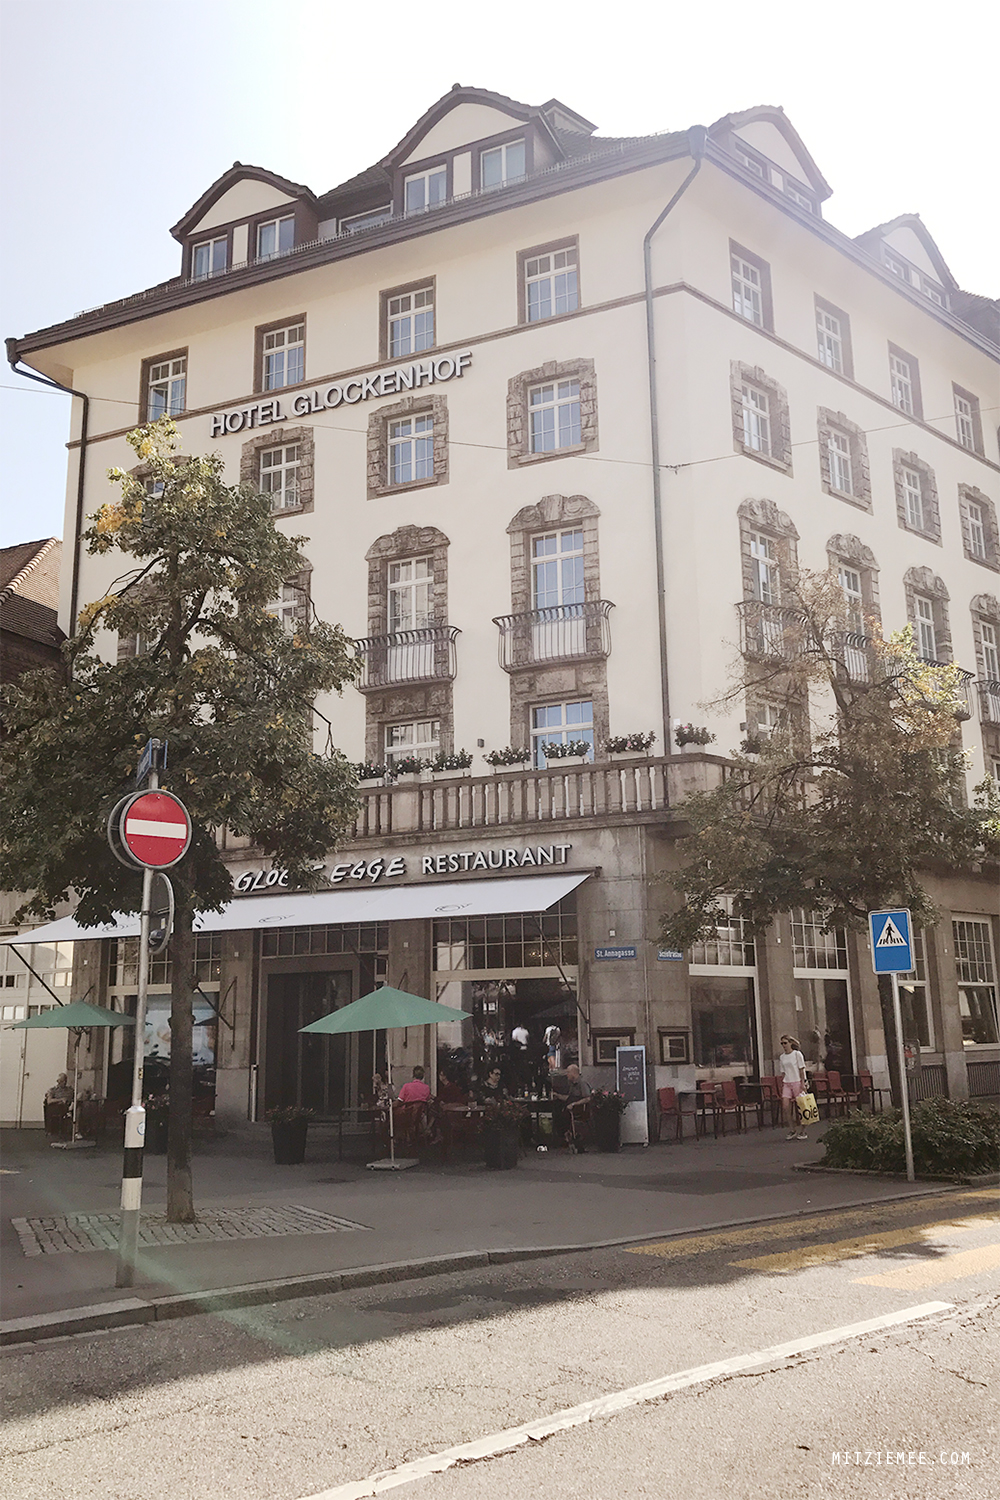 Glockenhof, Zurich